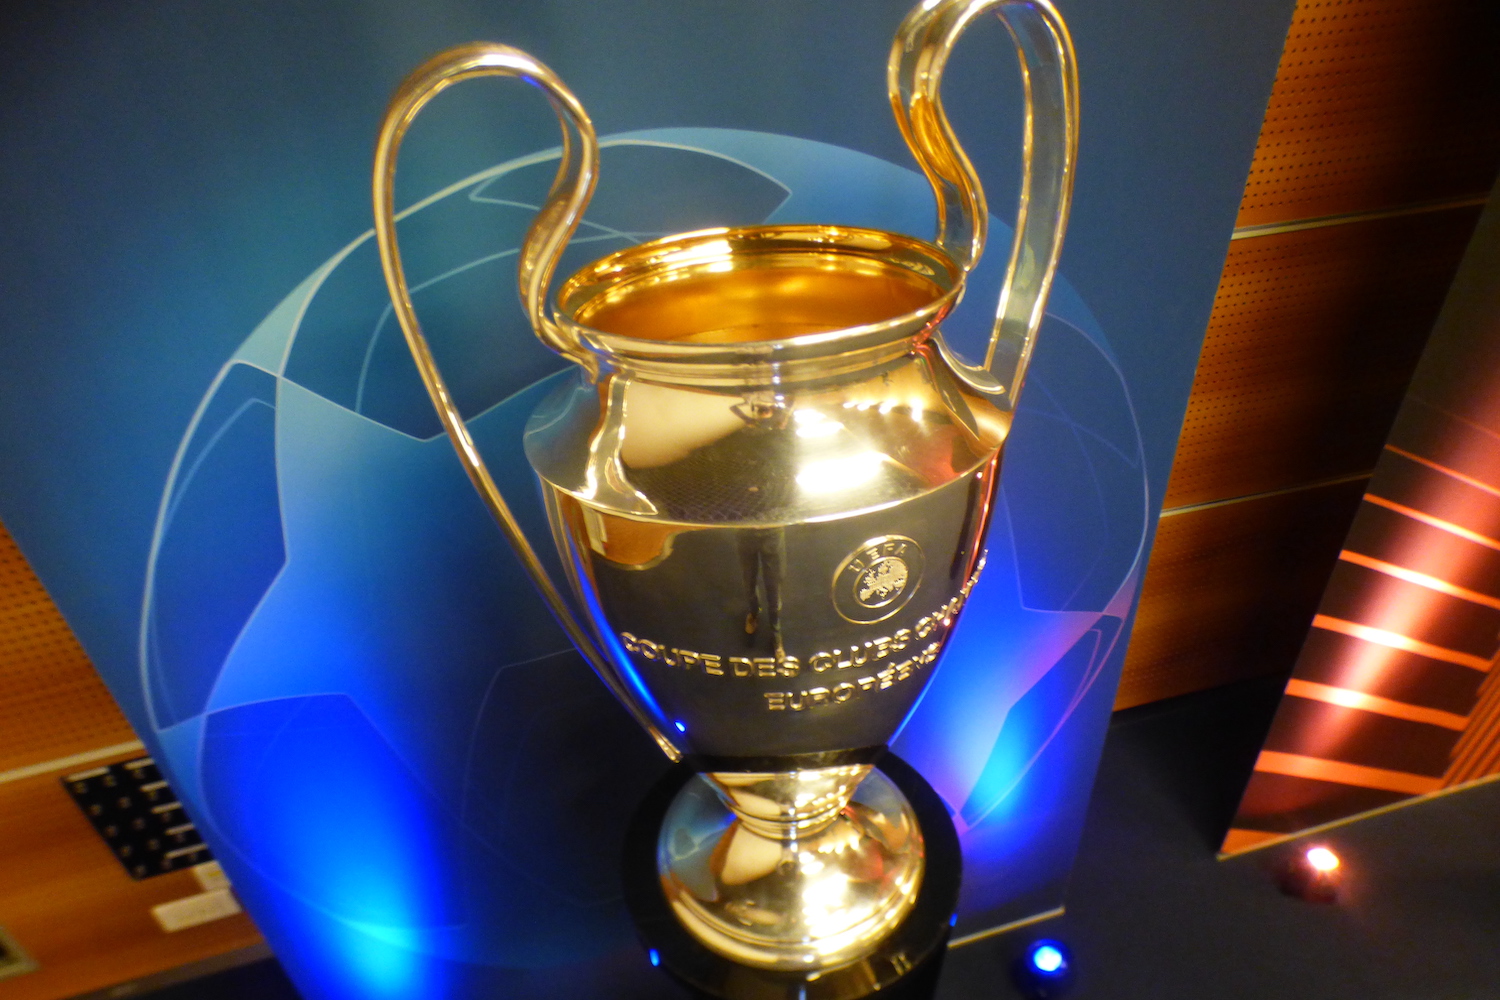 Trophée De La Ligue des Champions De 2022, TrophéE du Champion